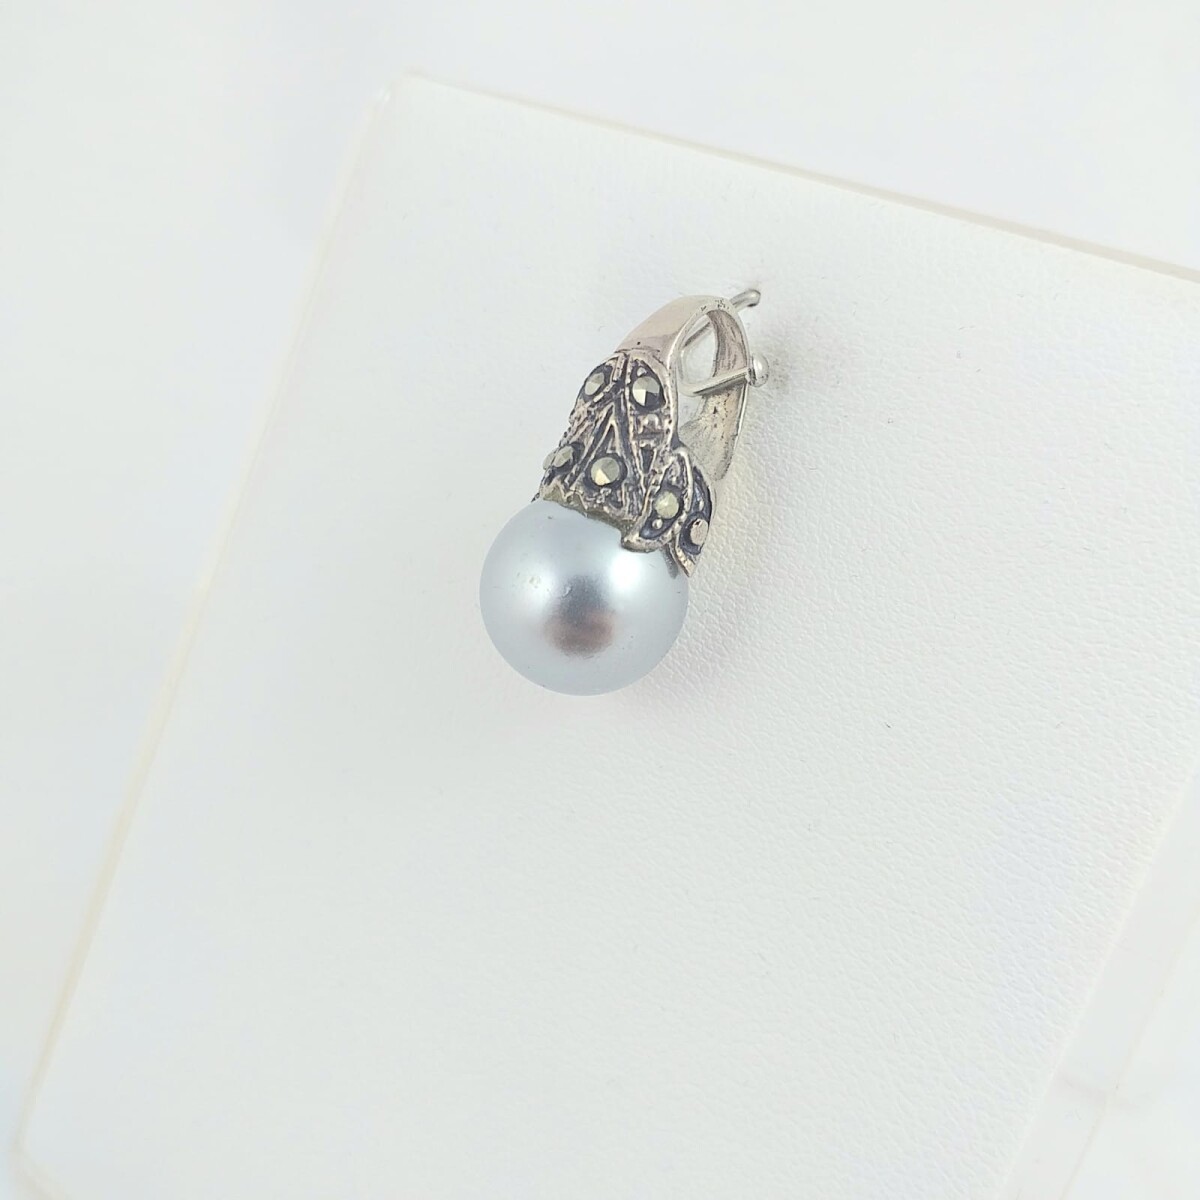 Dije de plata 925 modelo Lady Di, con perla de fantasía de 11mm, circonias incrustadas, largo 2.3cm. 